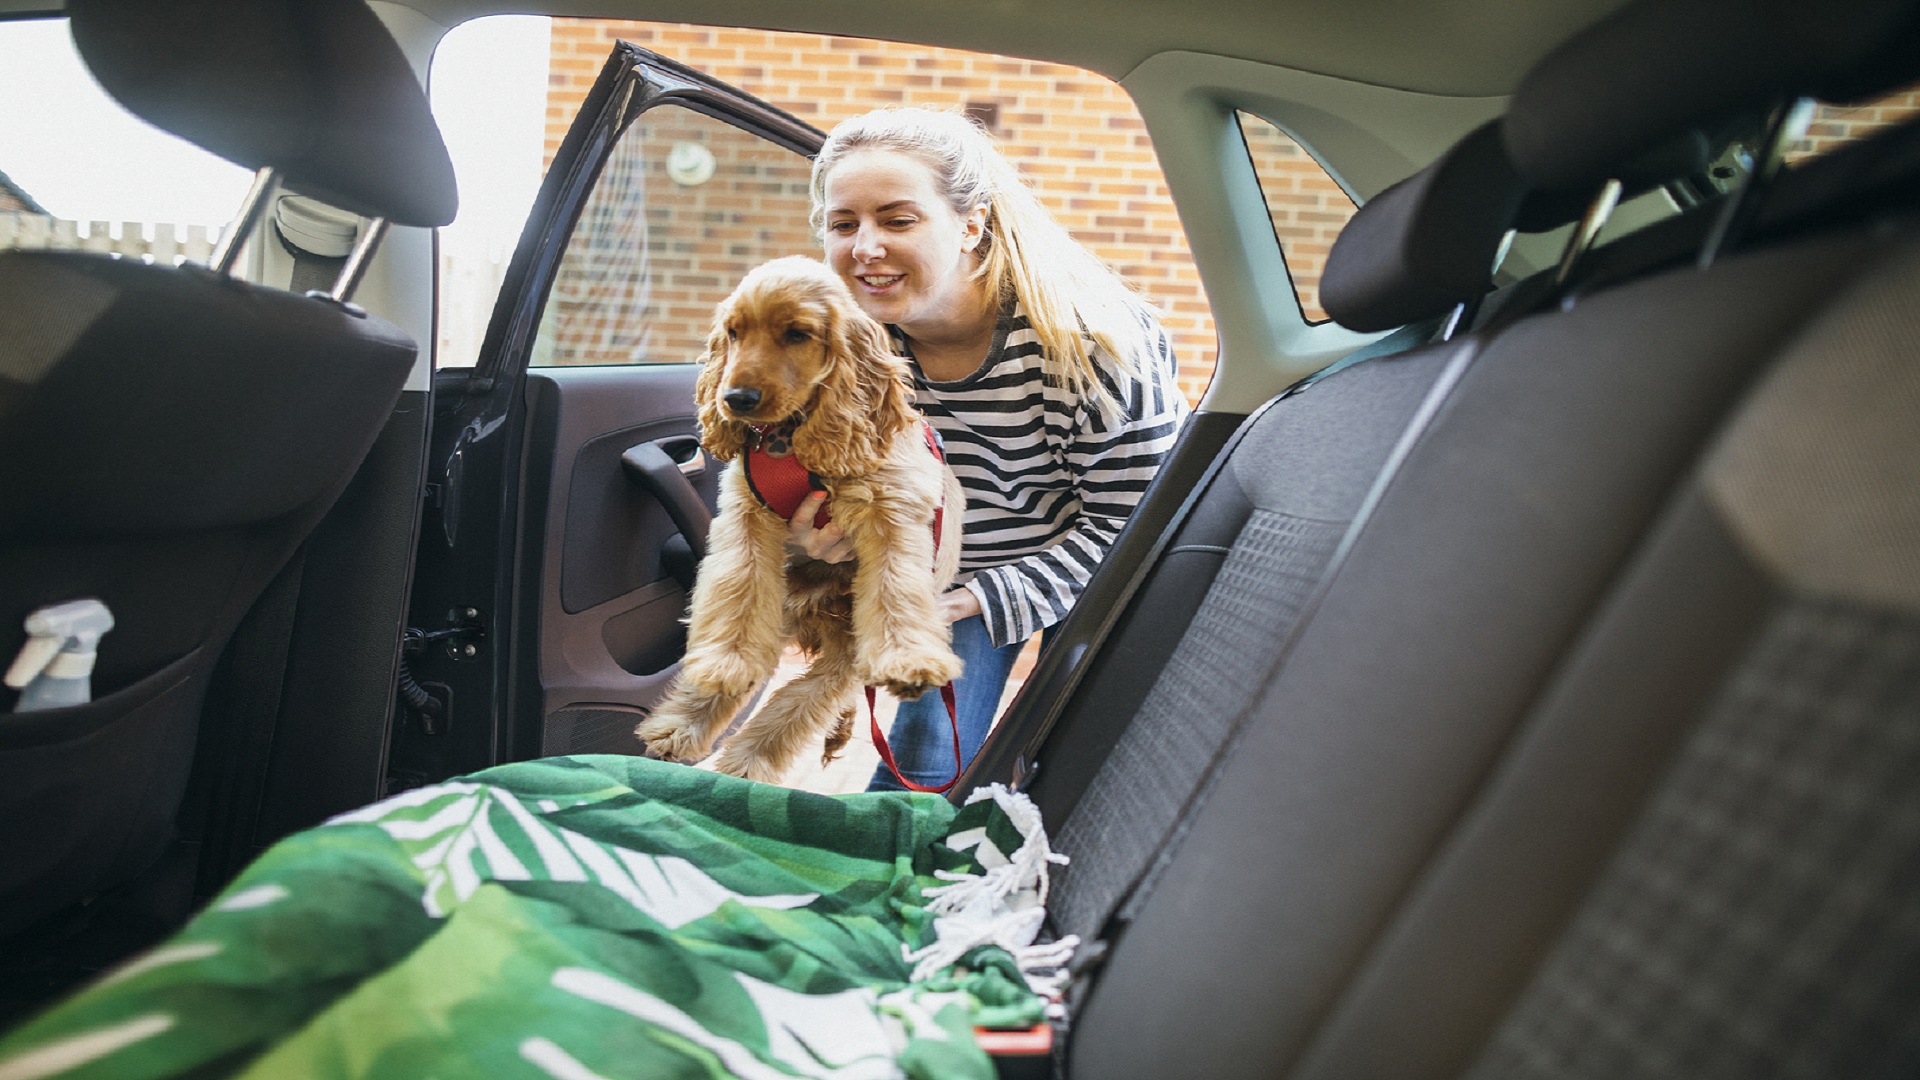 Housse de protection auto pour chien sièges arrière NORAUTO - Norauto